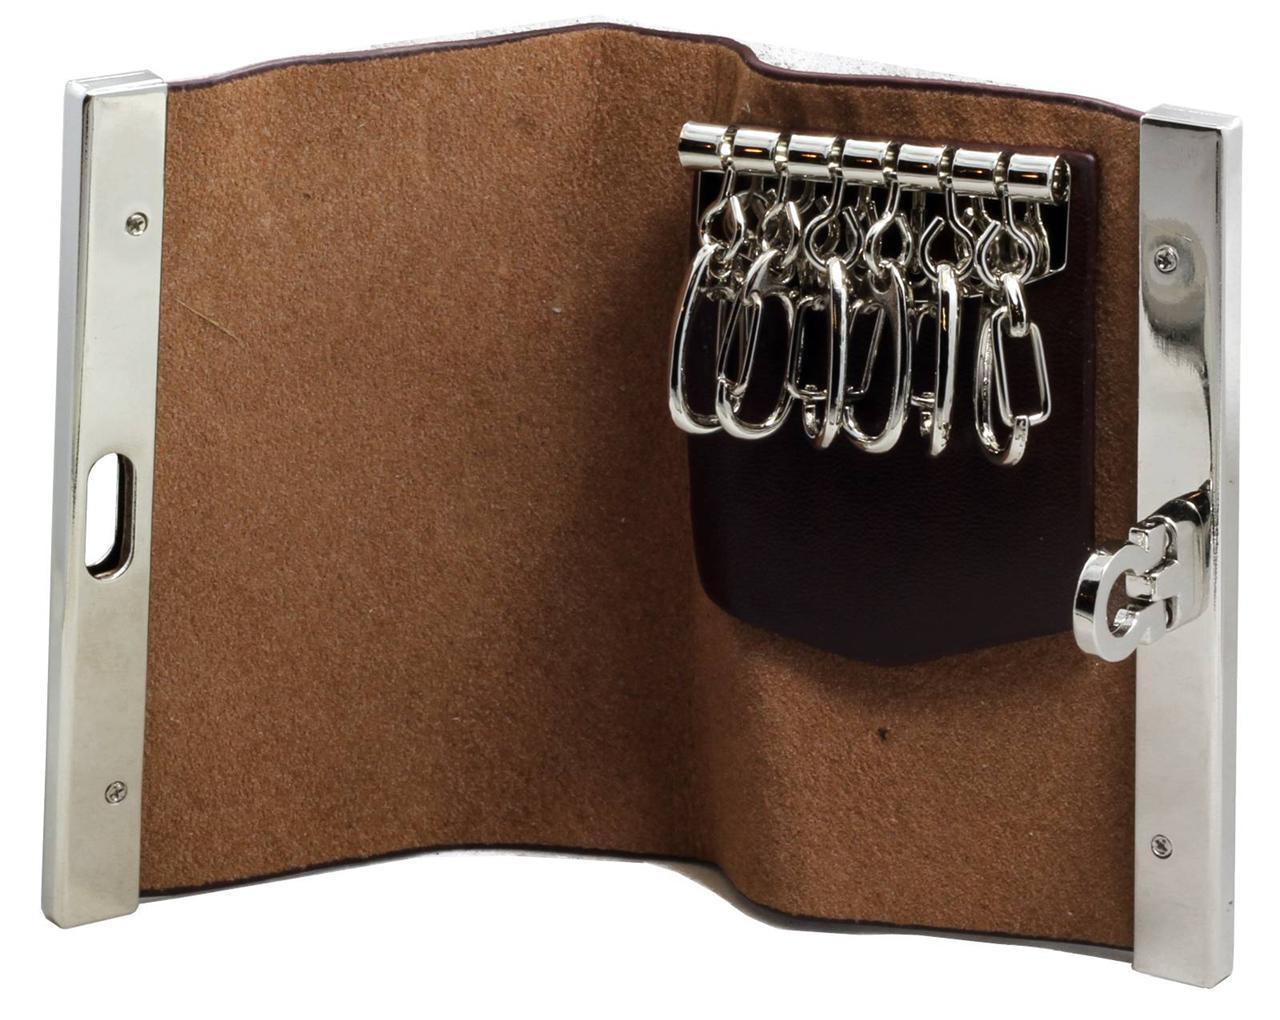 Vintage Leather Key Wallet Keychain Bill Holder Black or Brown